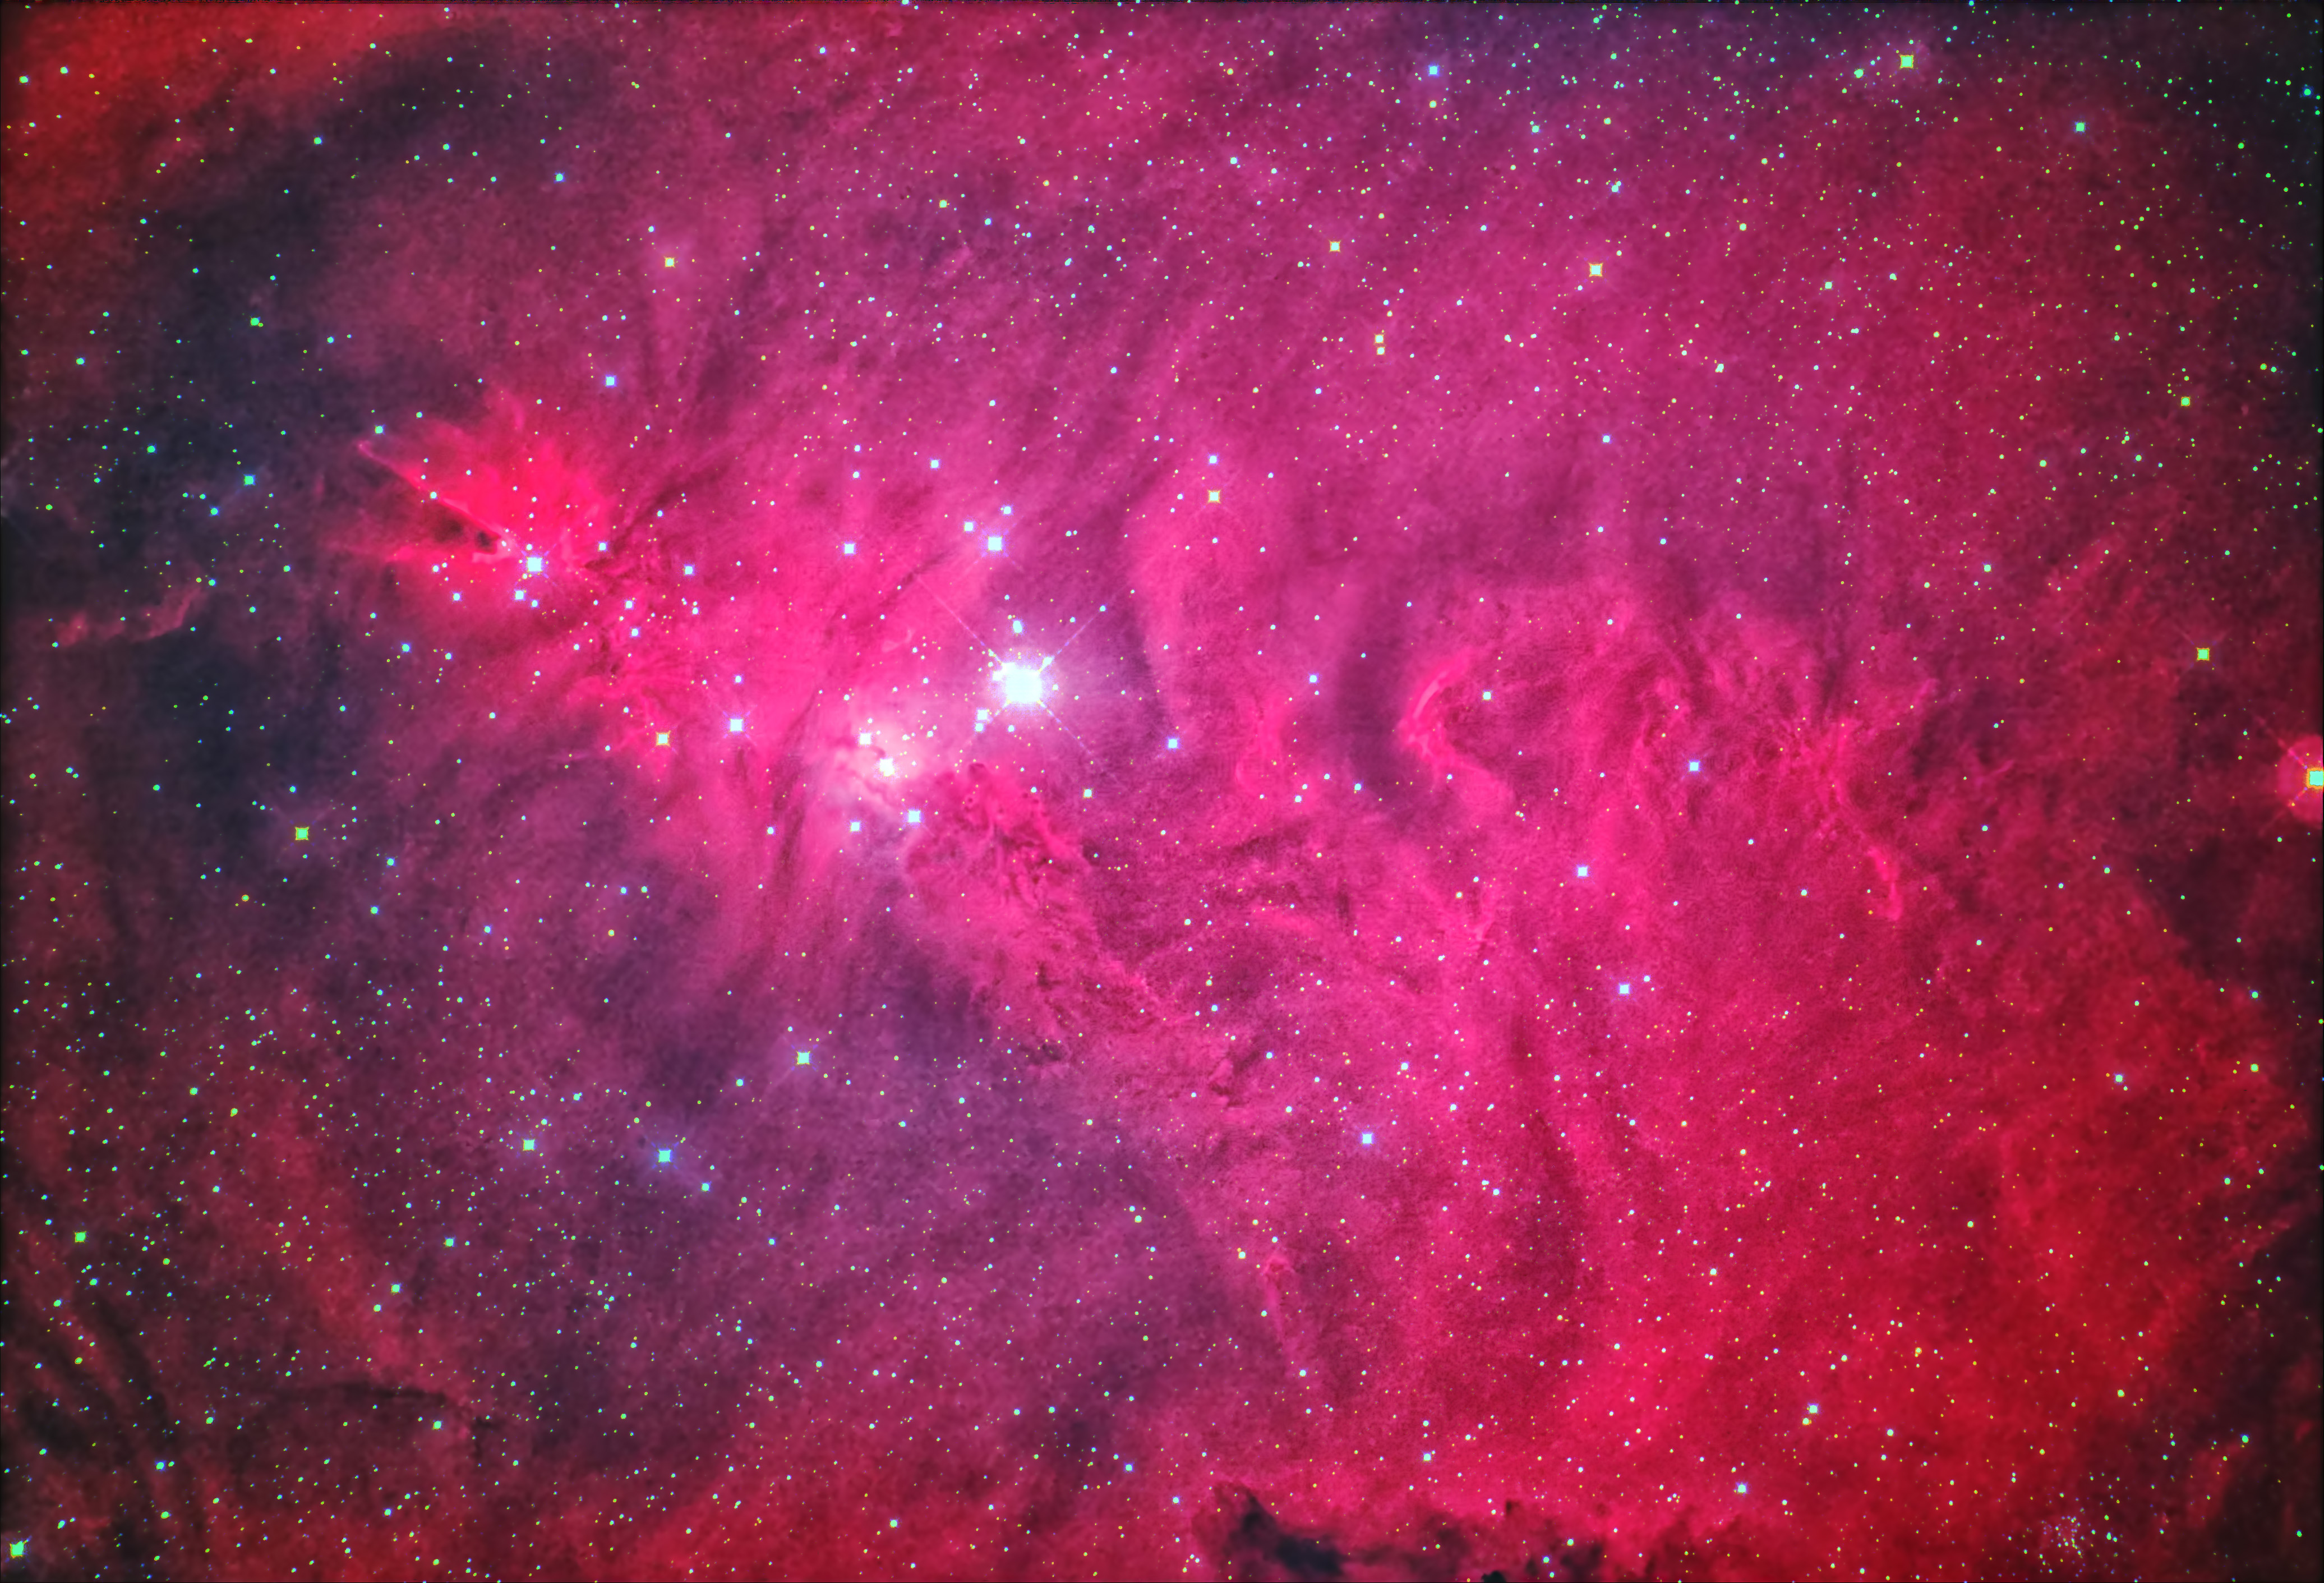 NGC2264-retouch-JPG.jpg